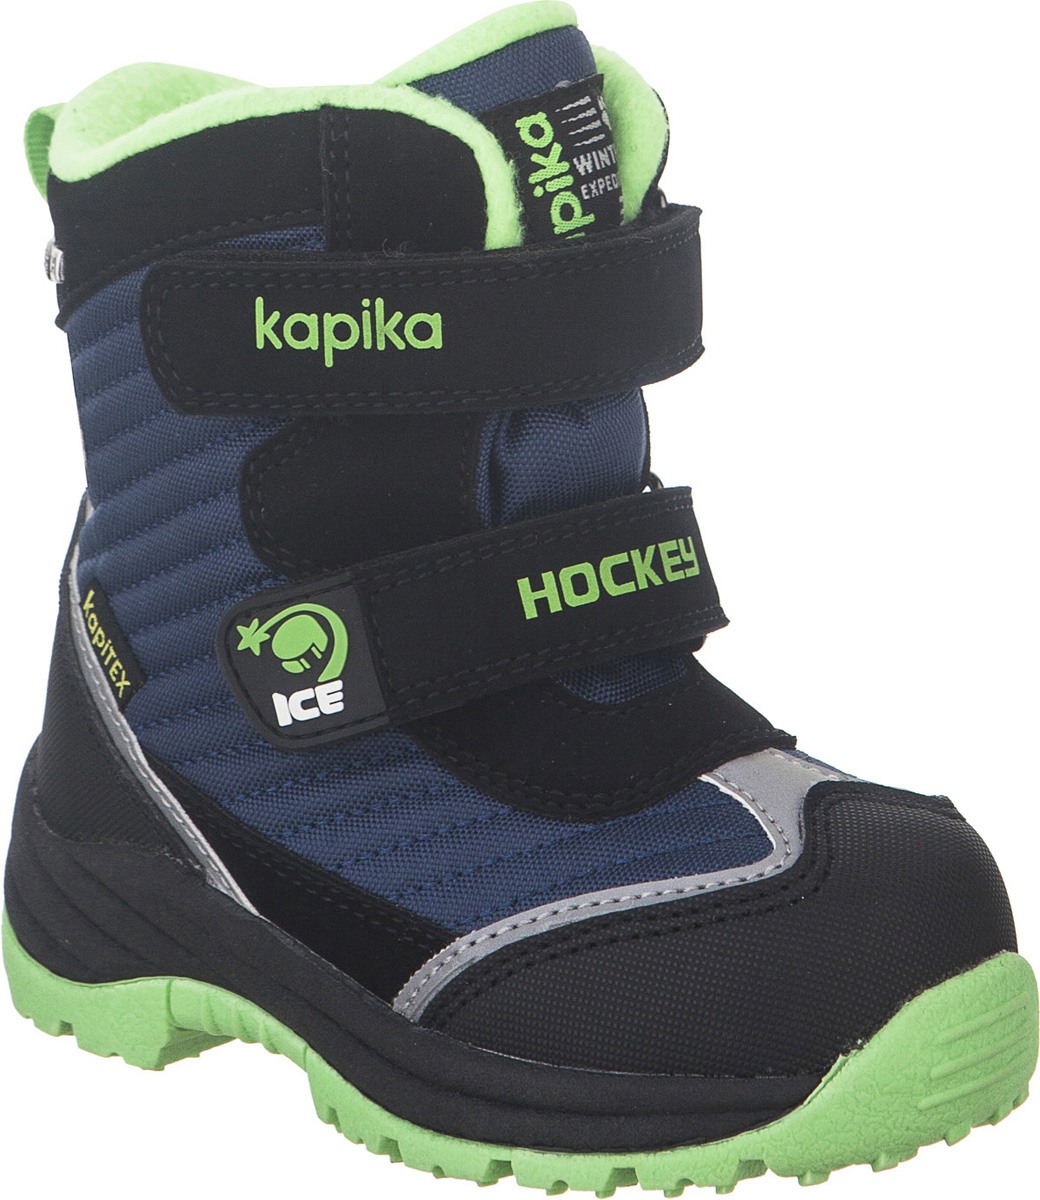 Ботинки для мальчика Kapika KapiTEX, цвет: черный, синий, салатовый. 41201-2. Размер 22